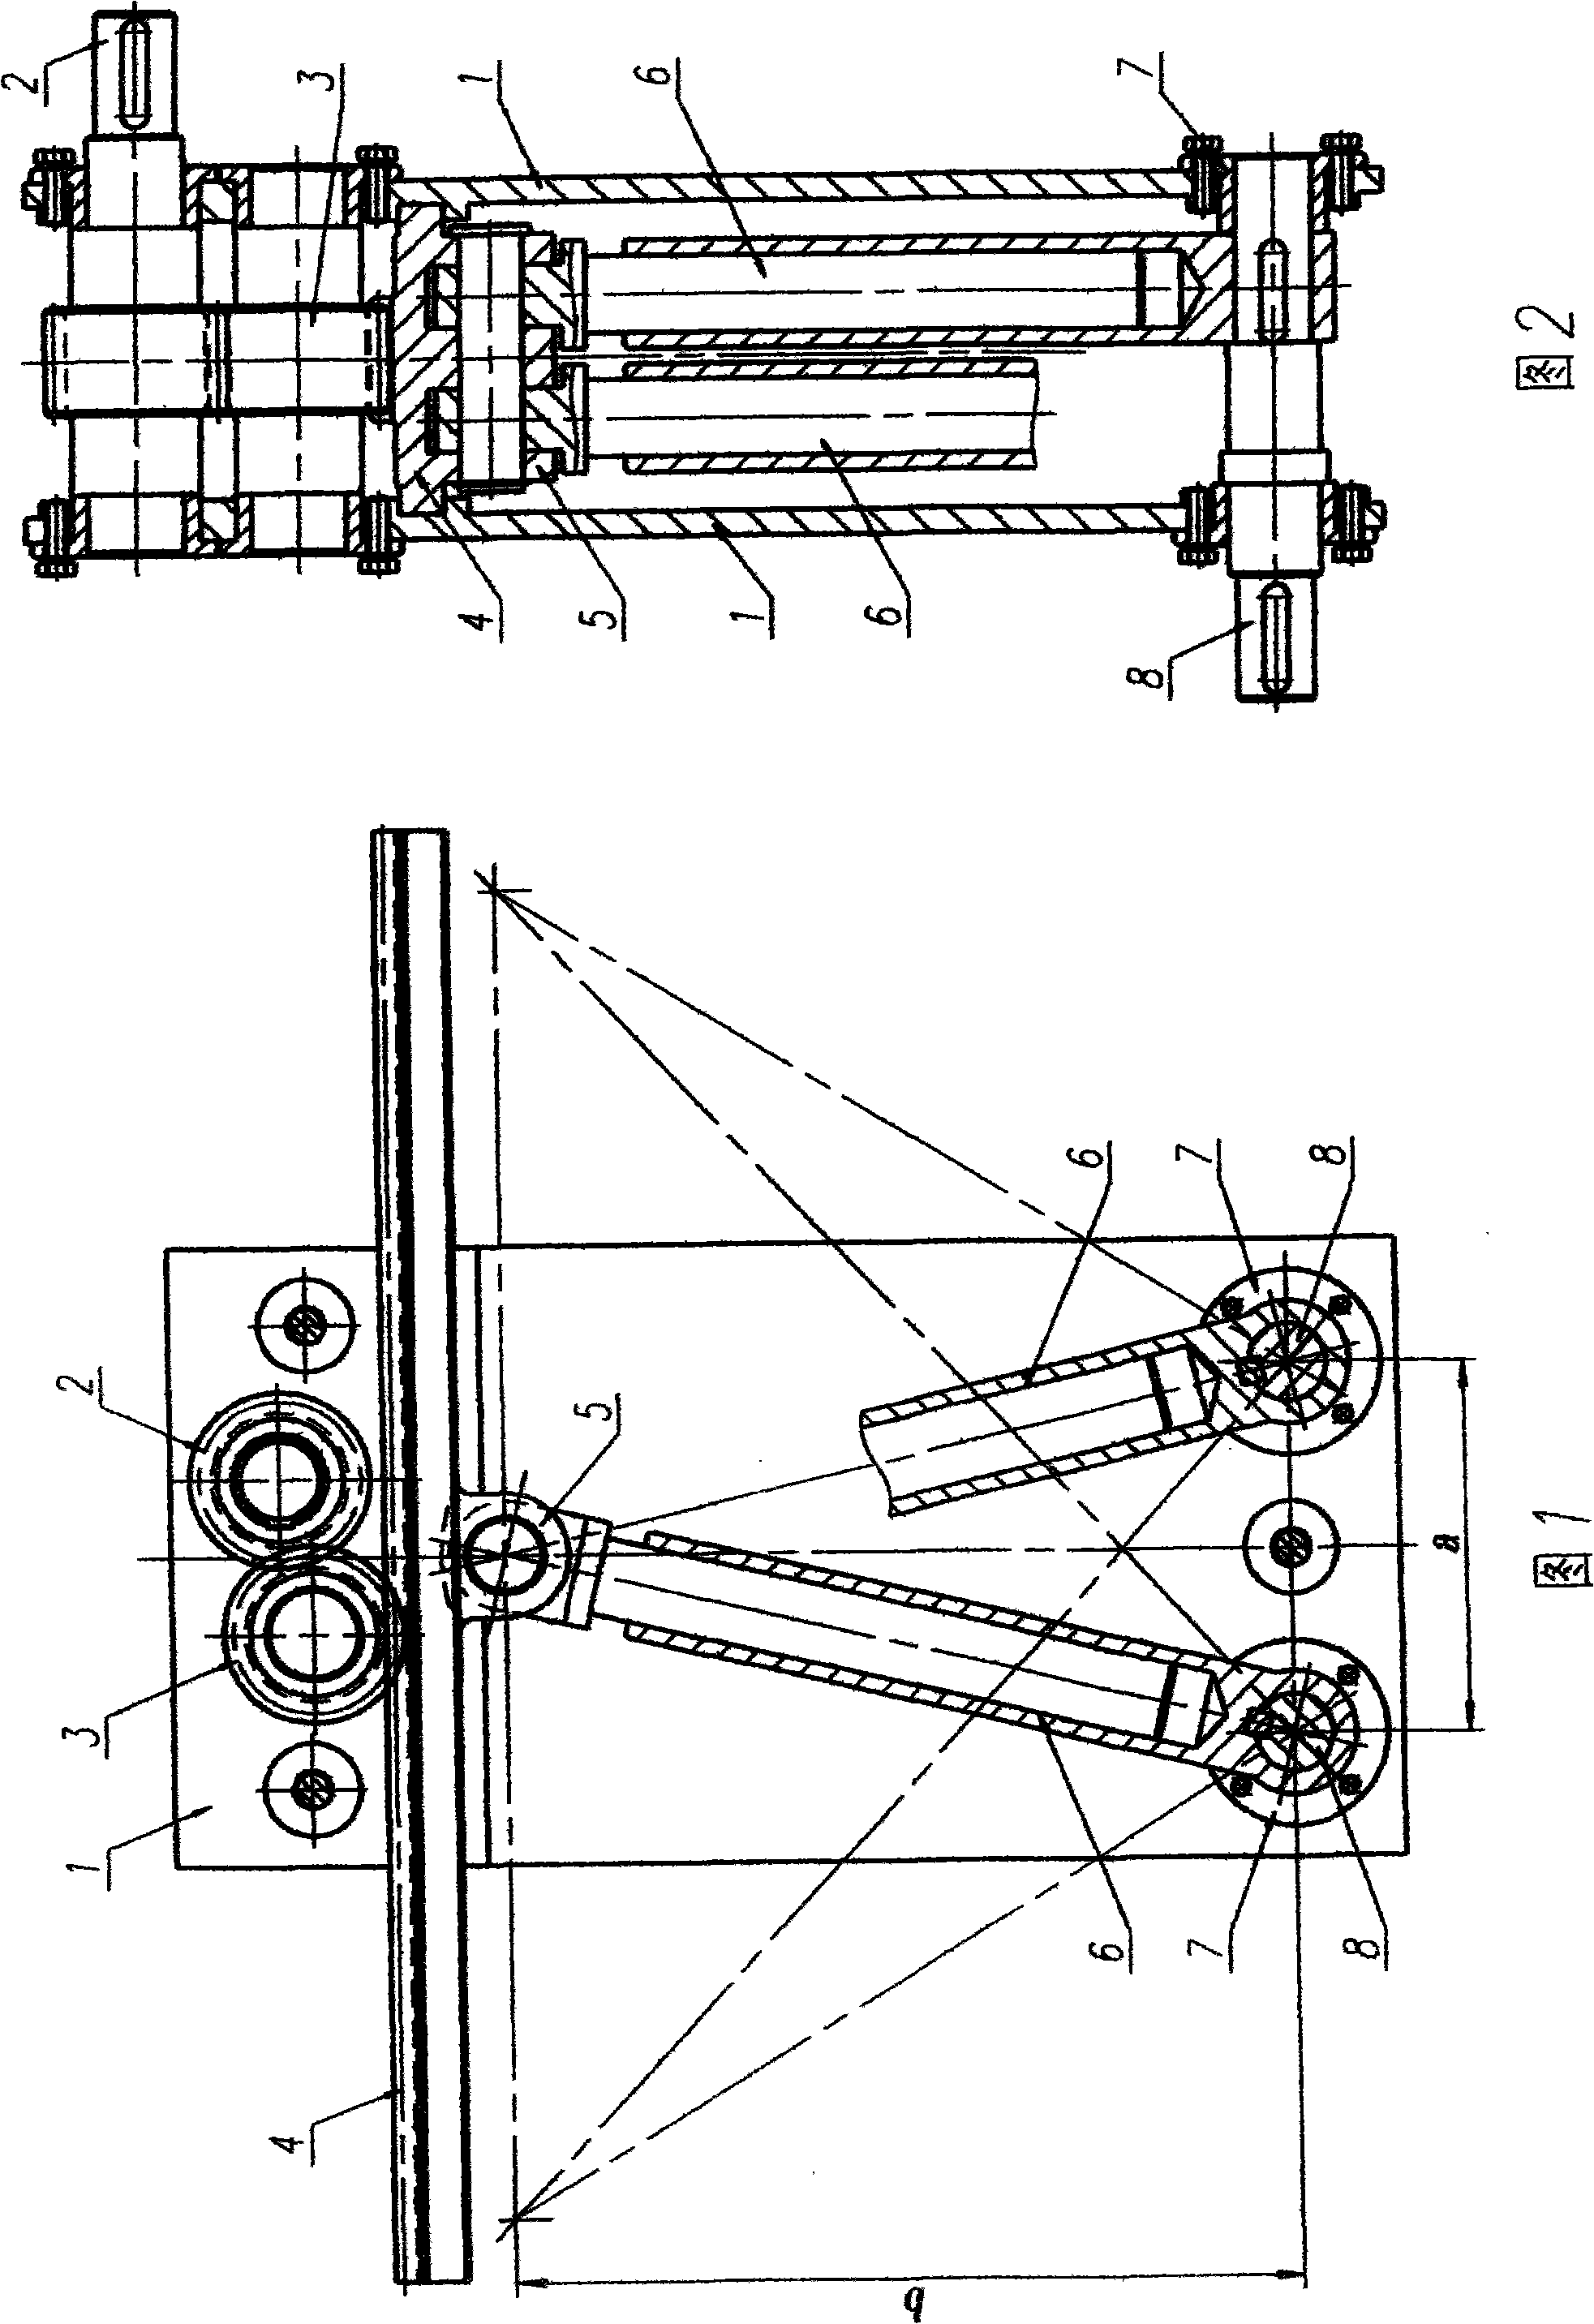 Car steering linkage mechanism